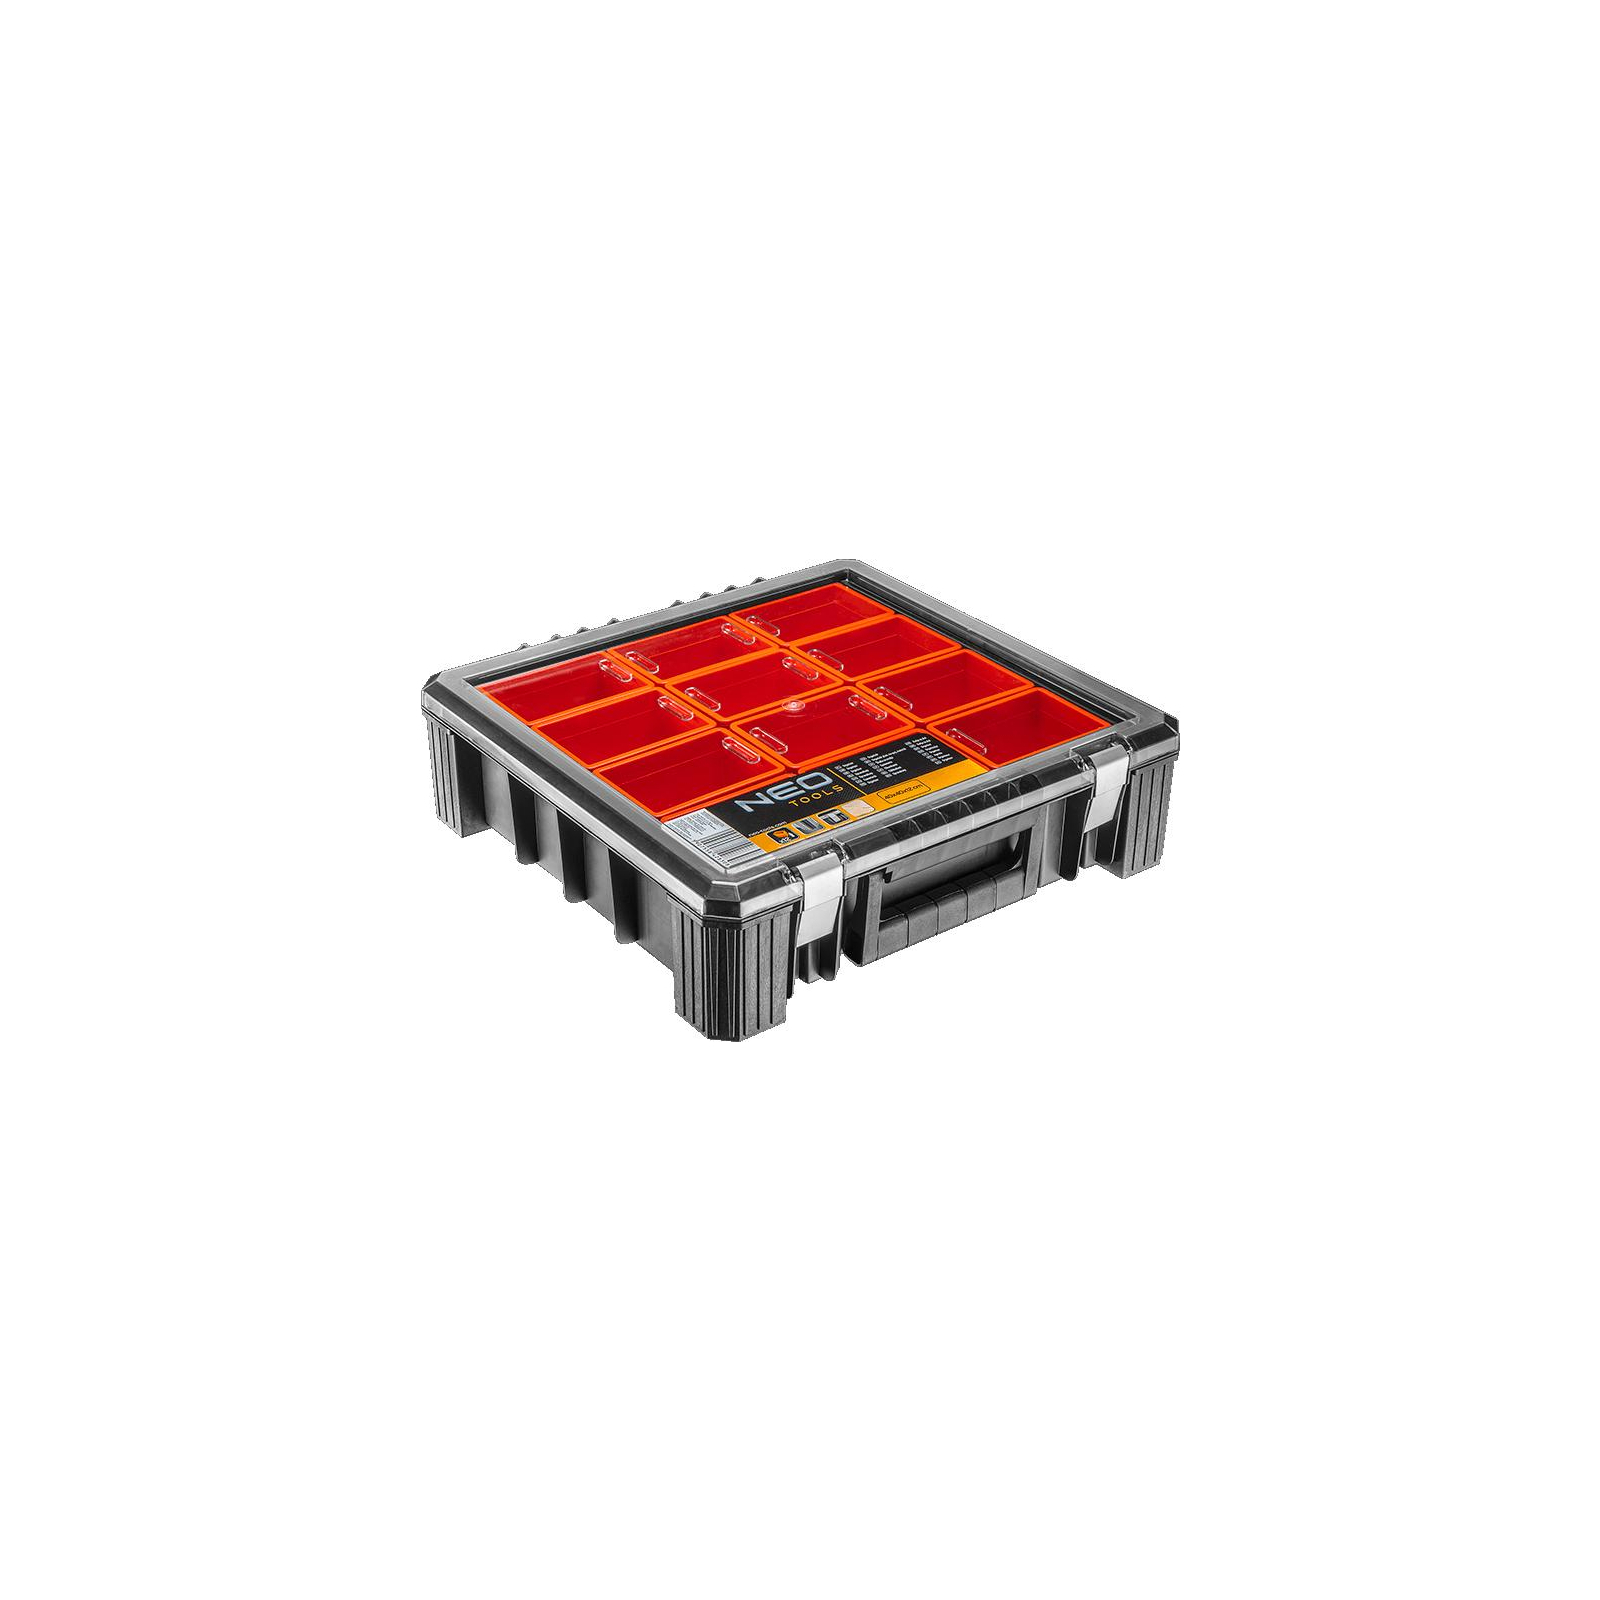 Ящик для інструментів Neo Tools органайзер с отделениями 40 x 40 x 12 см (84-130)